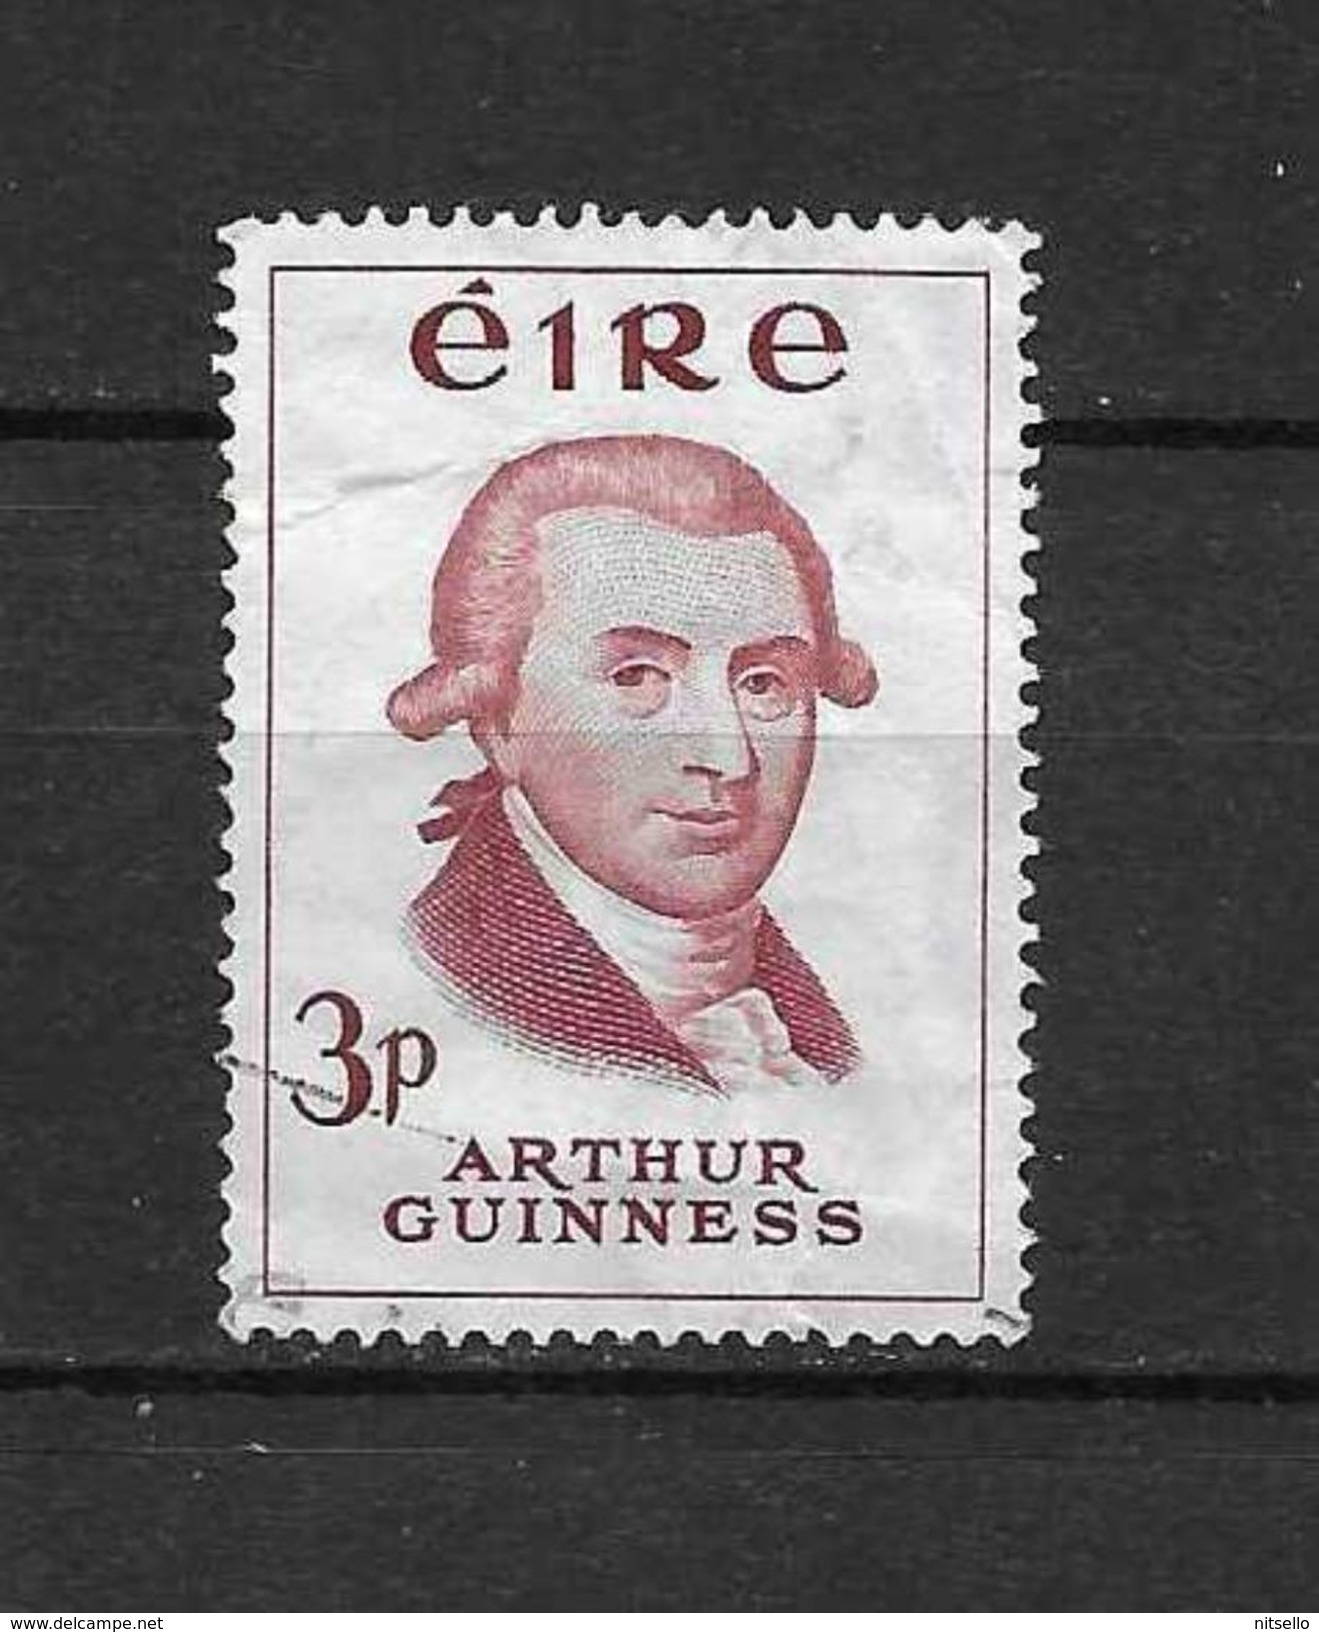 LOTE  1472   ////  (C005)  IRLANDA  EIRE 1959  YVERT Nº: 142 - Used Stamps